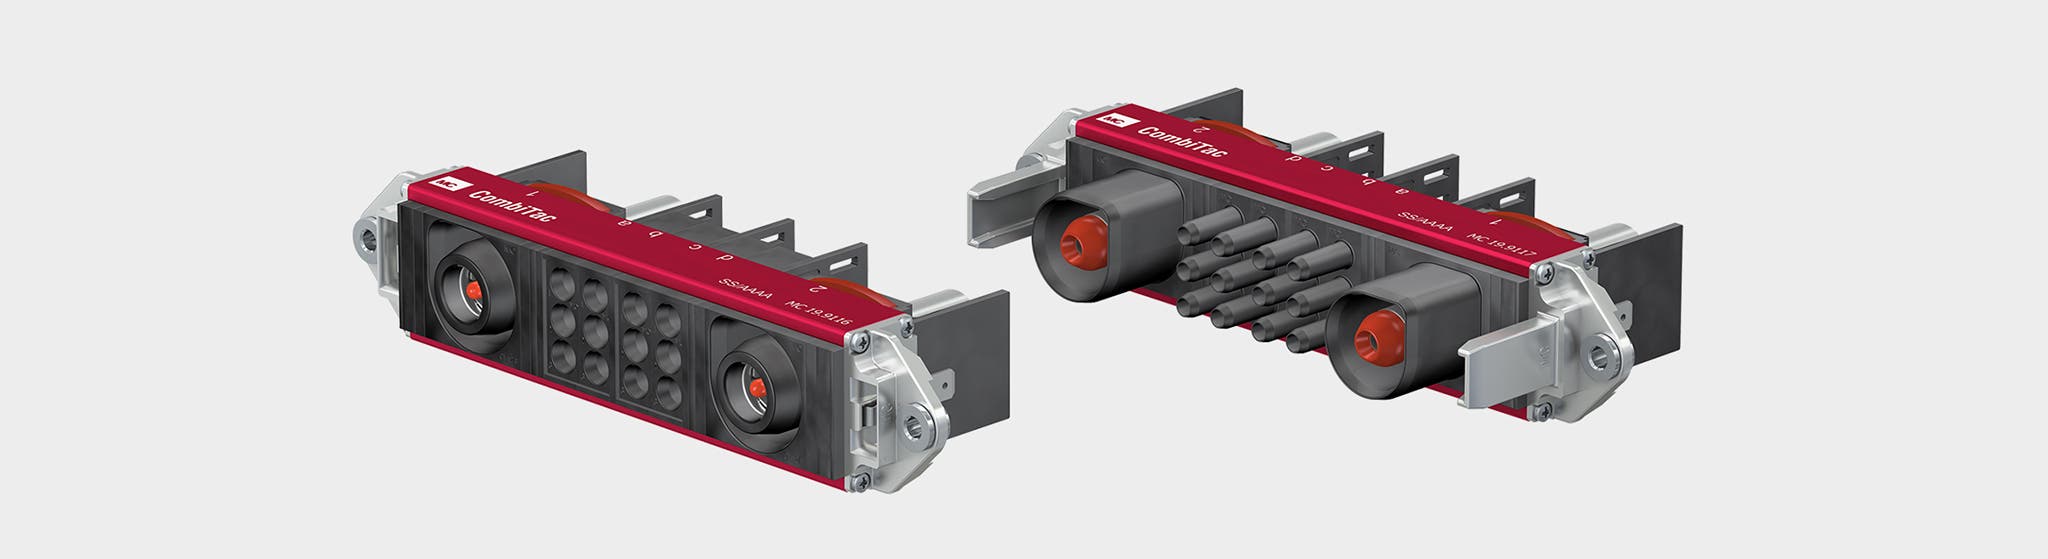 Les connecteurs pour pack batterie CT-HE répondent aux exigences spécifiques de l’industrie ferroviaire et sont particulièrement adaptés à l’utilisation dans le matériel roulant ferroviaire.